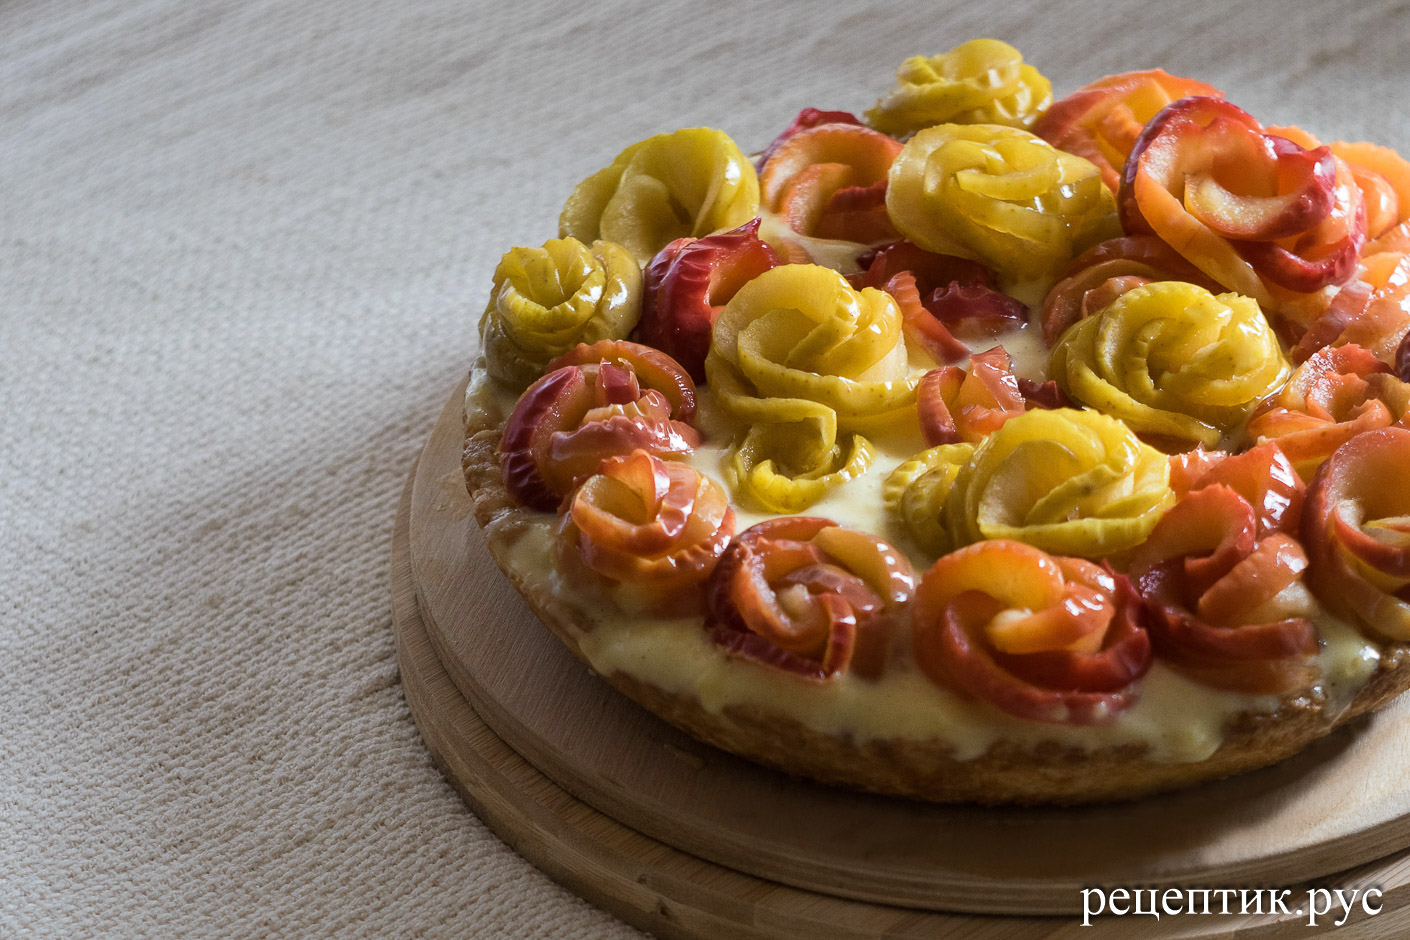 Итальянская кростата — песочный пирог с яблоками и заварным кремом - рецепт с фото, результат